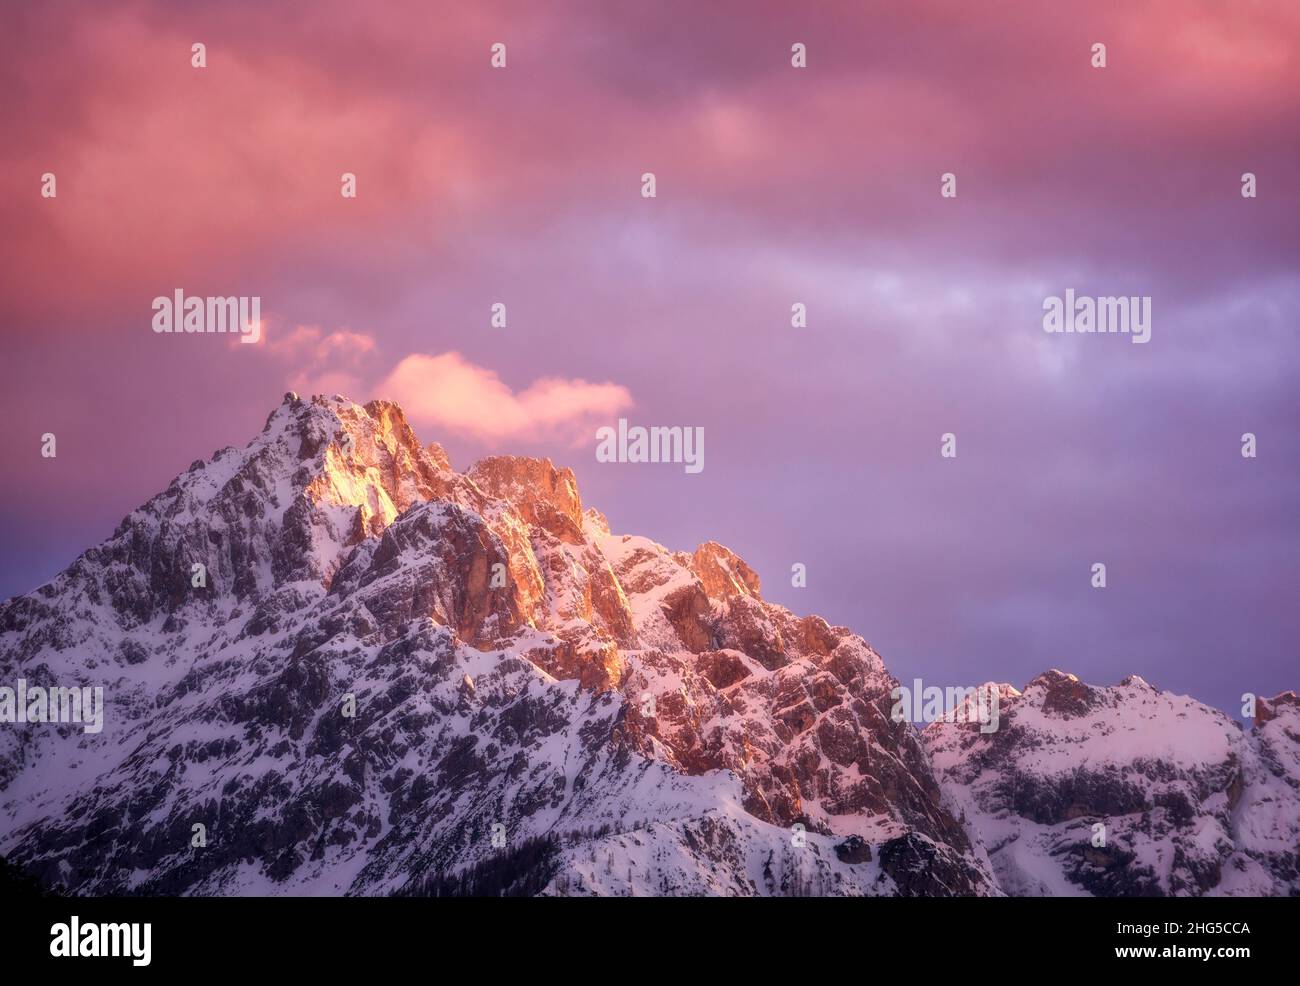 Hermosos picos montañosos en la nieve y el cielo violeta con nubes rosadas Foto de stock